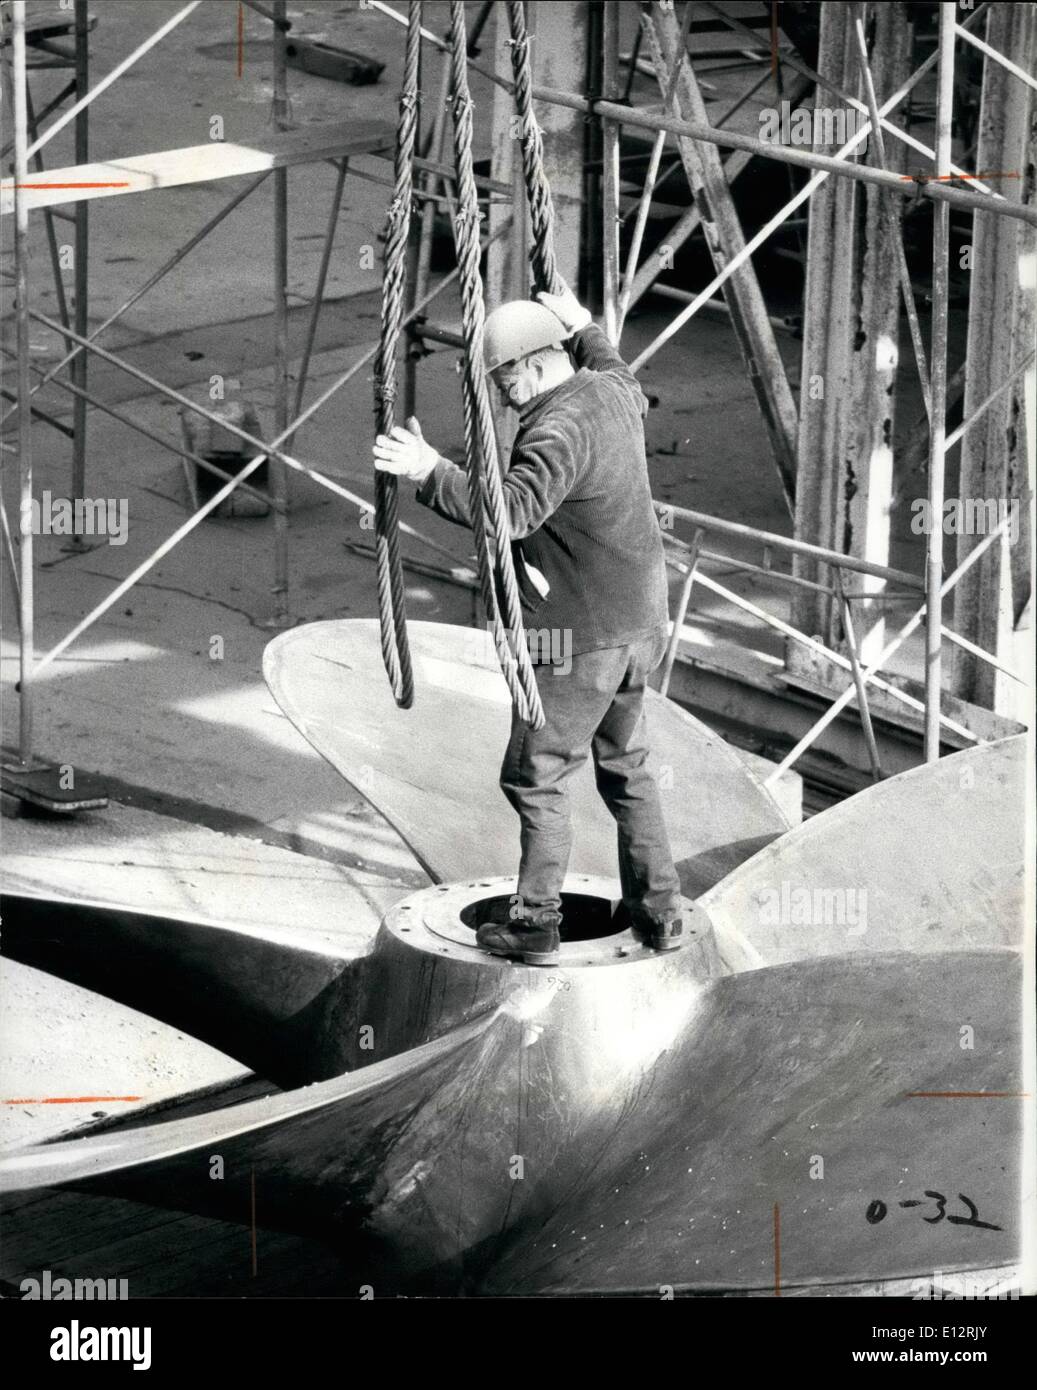 25 février 2012 - L'Australie 1976 quais de la construction navale de l'État à Newcastle Ã¢â€" travailleur avec hélice énorme Banque D'Images